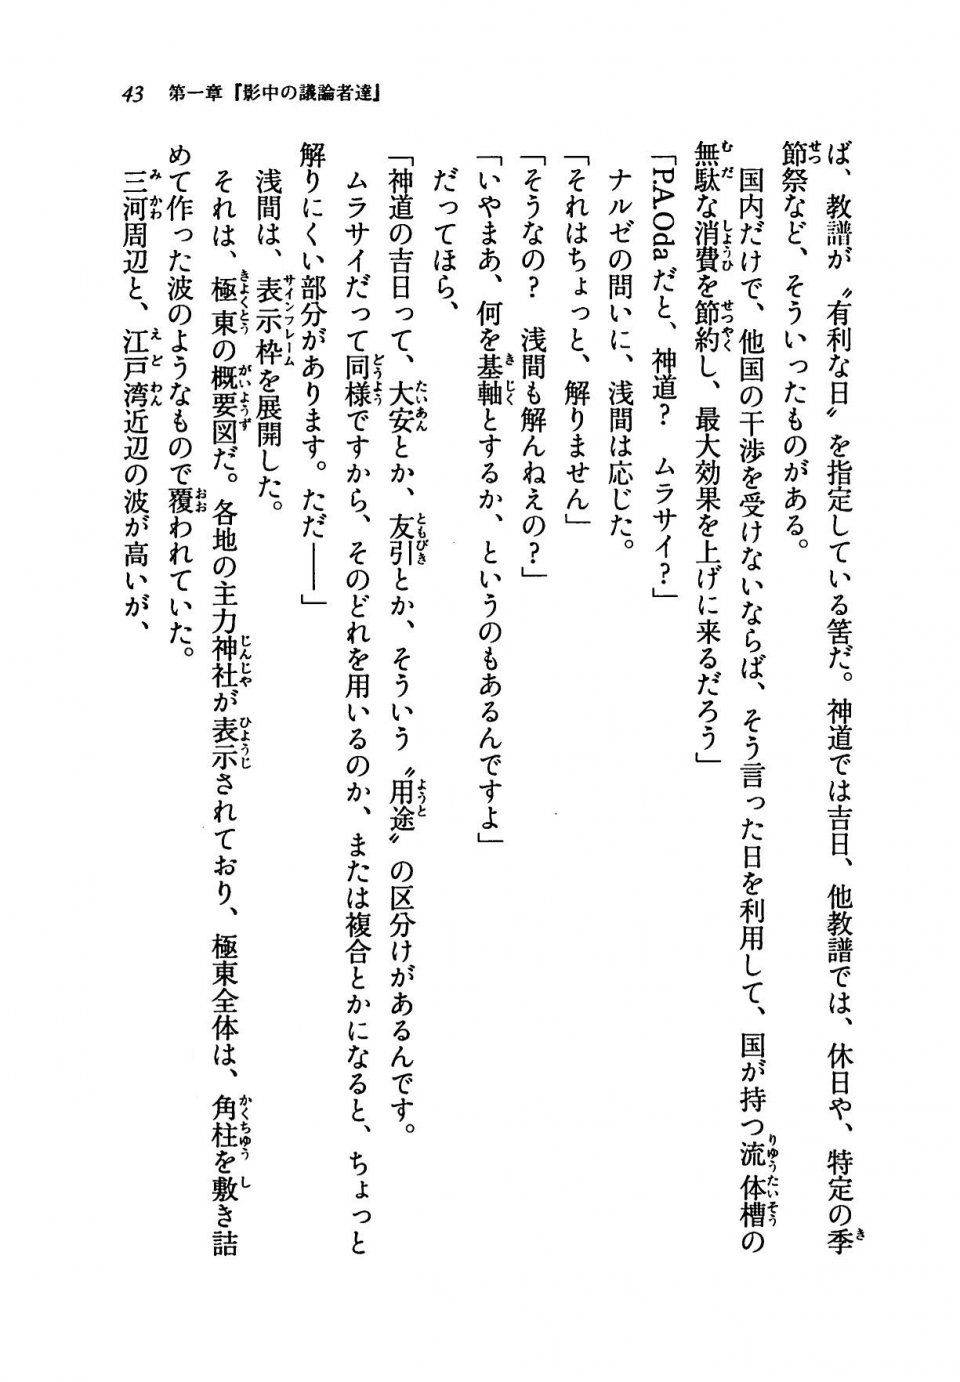 Kyoukai Senjou no Horizon LN Vol 19(8A) - Photo #43